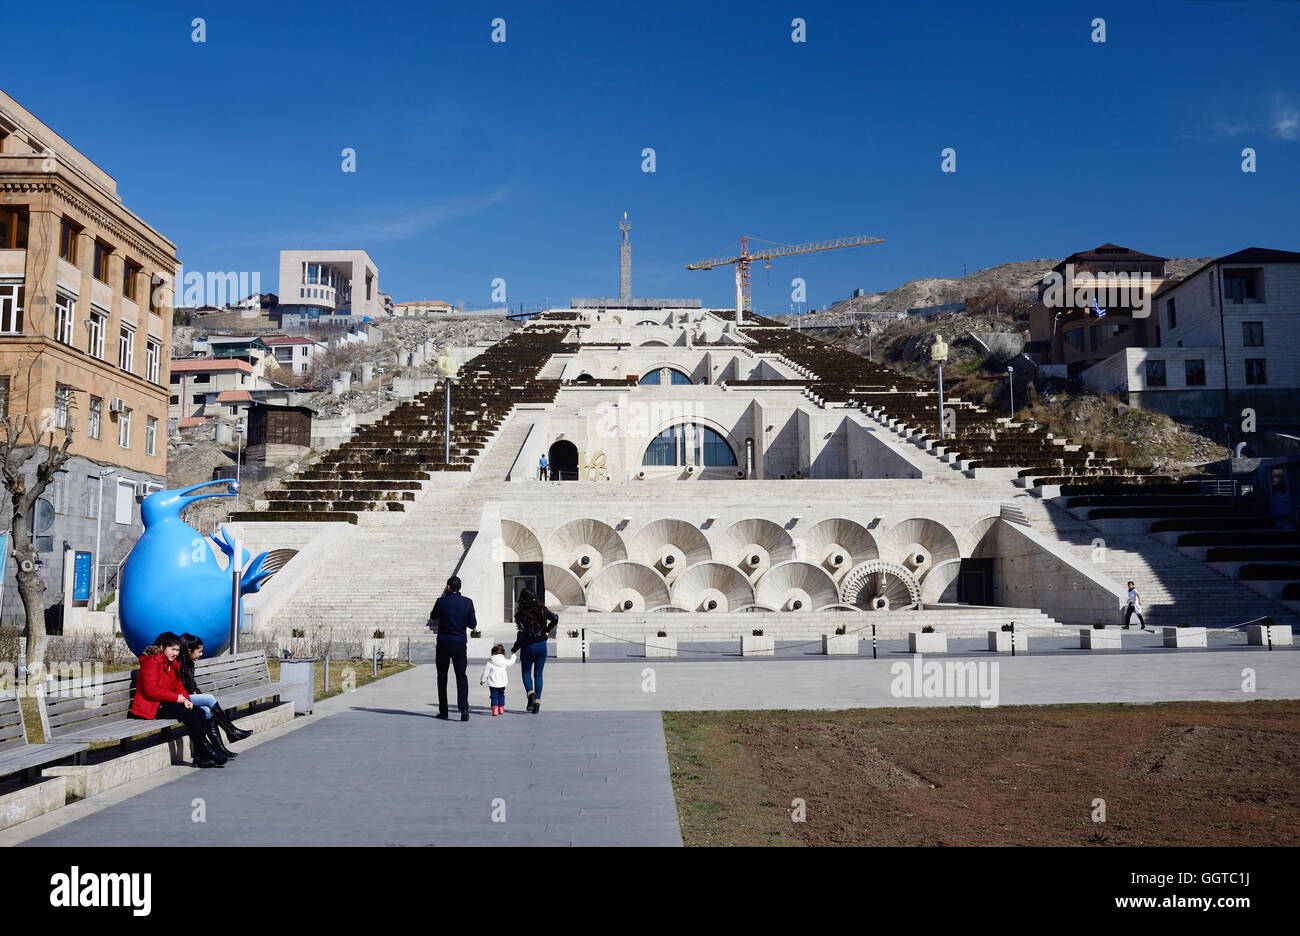 YEREVAN, ARMENIA - March 8, 2015: Tourist's visiting main Yerevan landmark -  Cascade stairway in Yerevan, Armenia. Stock Photo